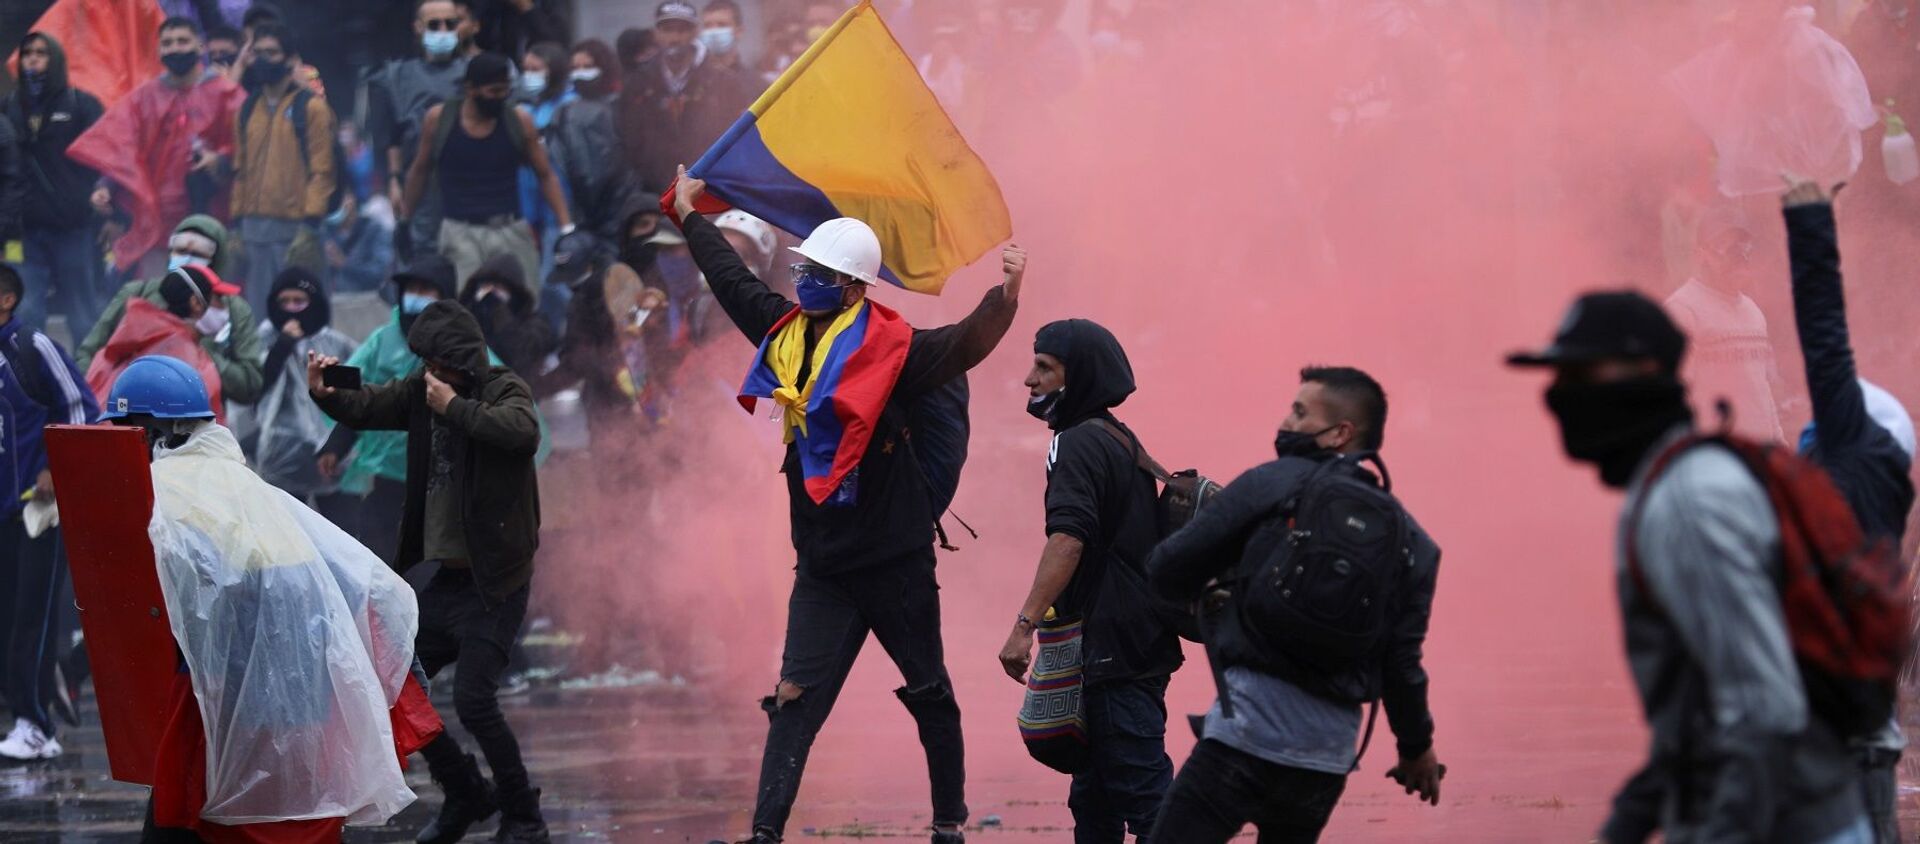 Kolombiya'da 7 günden bu yana devam eden vergi reformu karşıtı kitlesel gösterilerde hayatını kaybedenlerin sayısı, 5 artarak 24'e yükseldi, yaralı sayısı ise 900'ü geçti. - Sputnik Türkiye, 1920, 07.05.2021